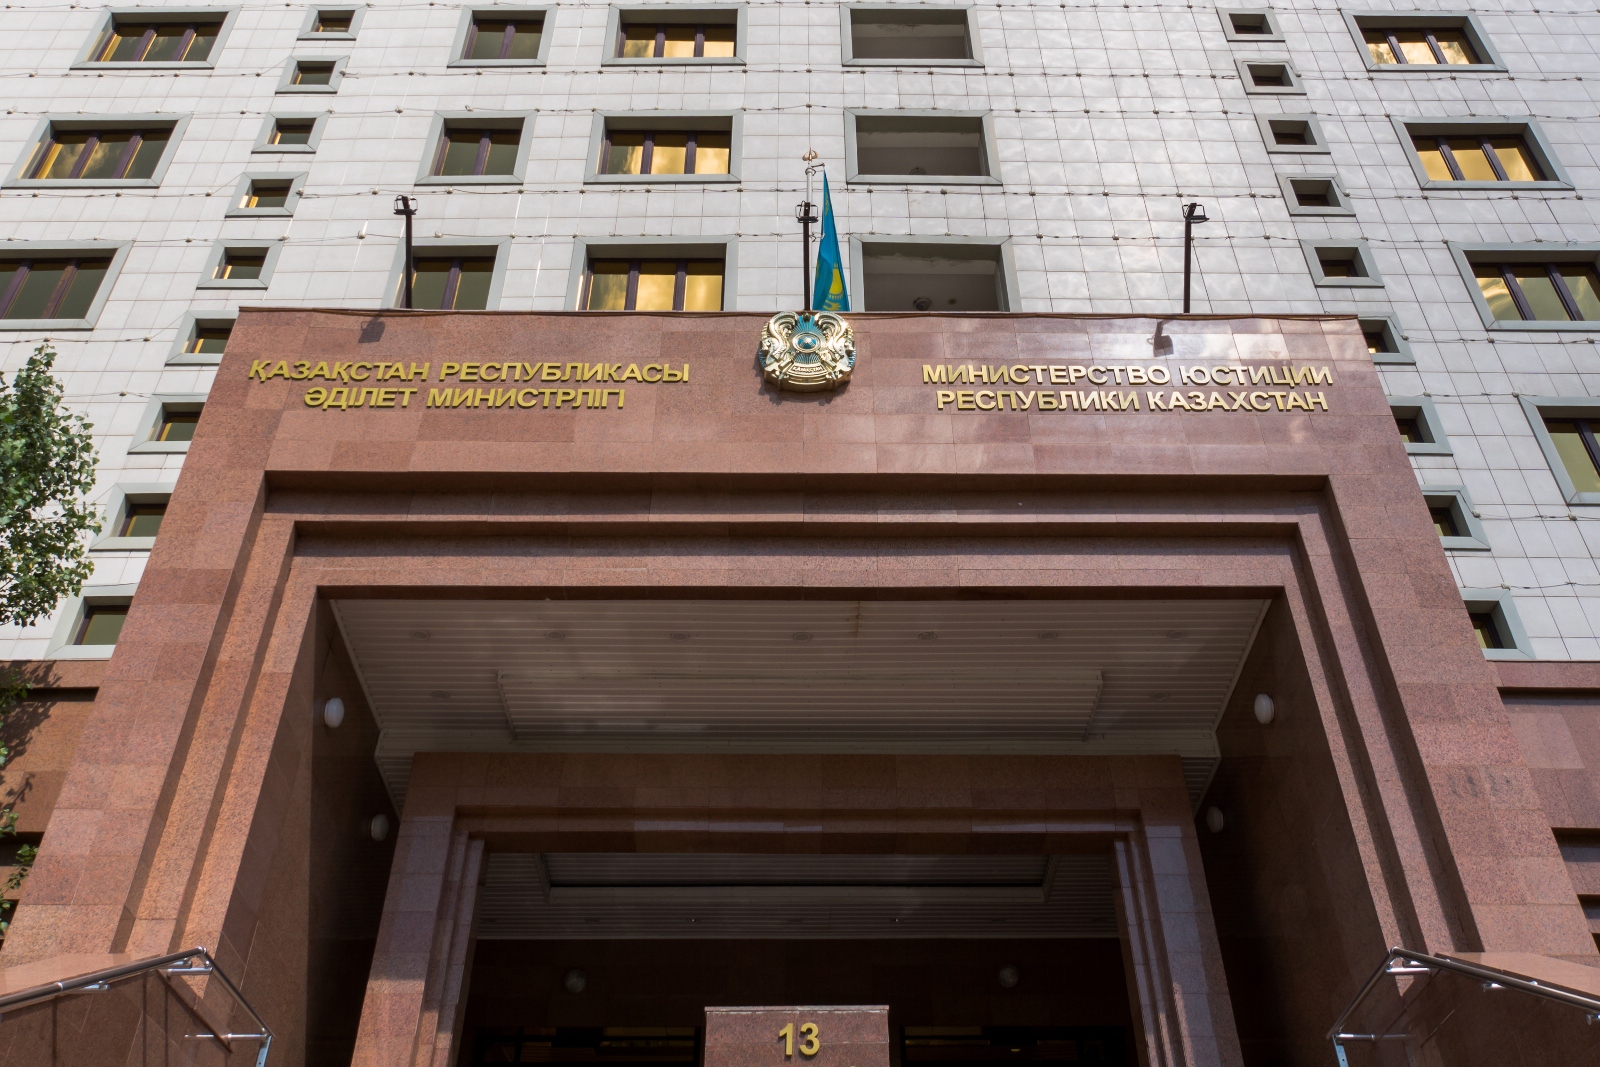 СПИСОК Кандидатов рекомендованных в соответствии с протоколом конкурсной комиссии Министерства юстиции Республики Казахстан № 22-2 от 2 августа 2022 года